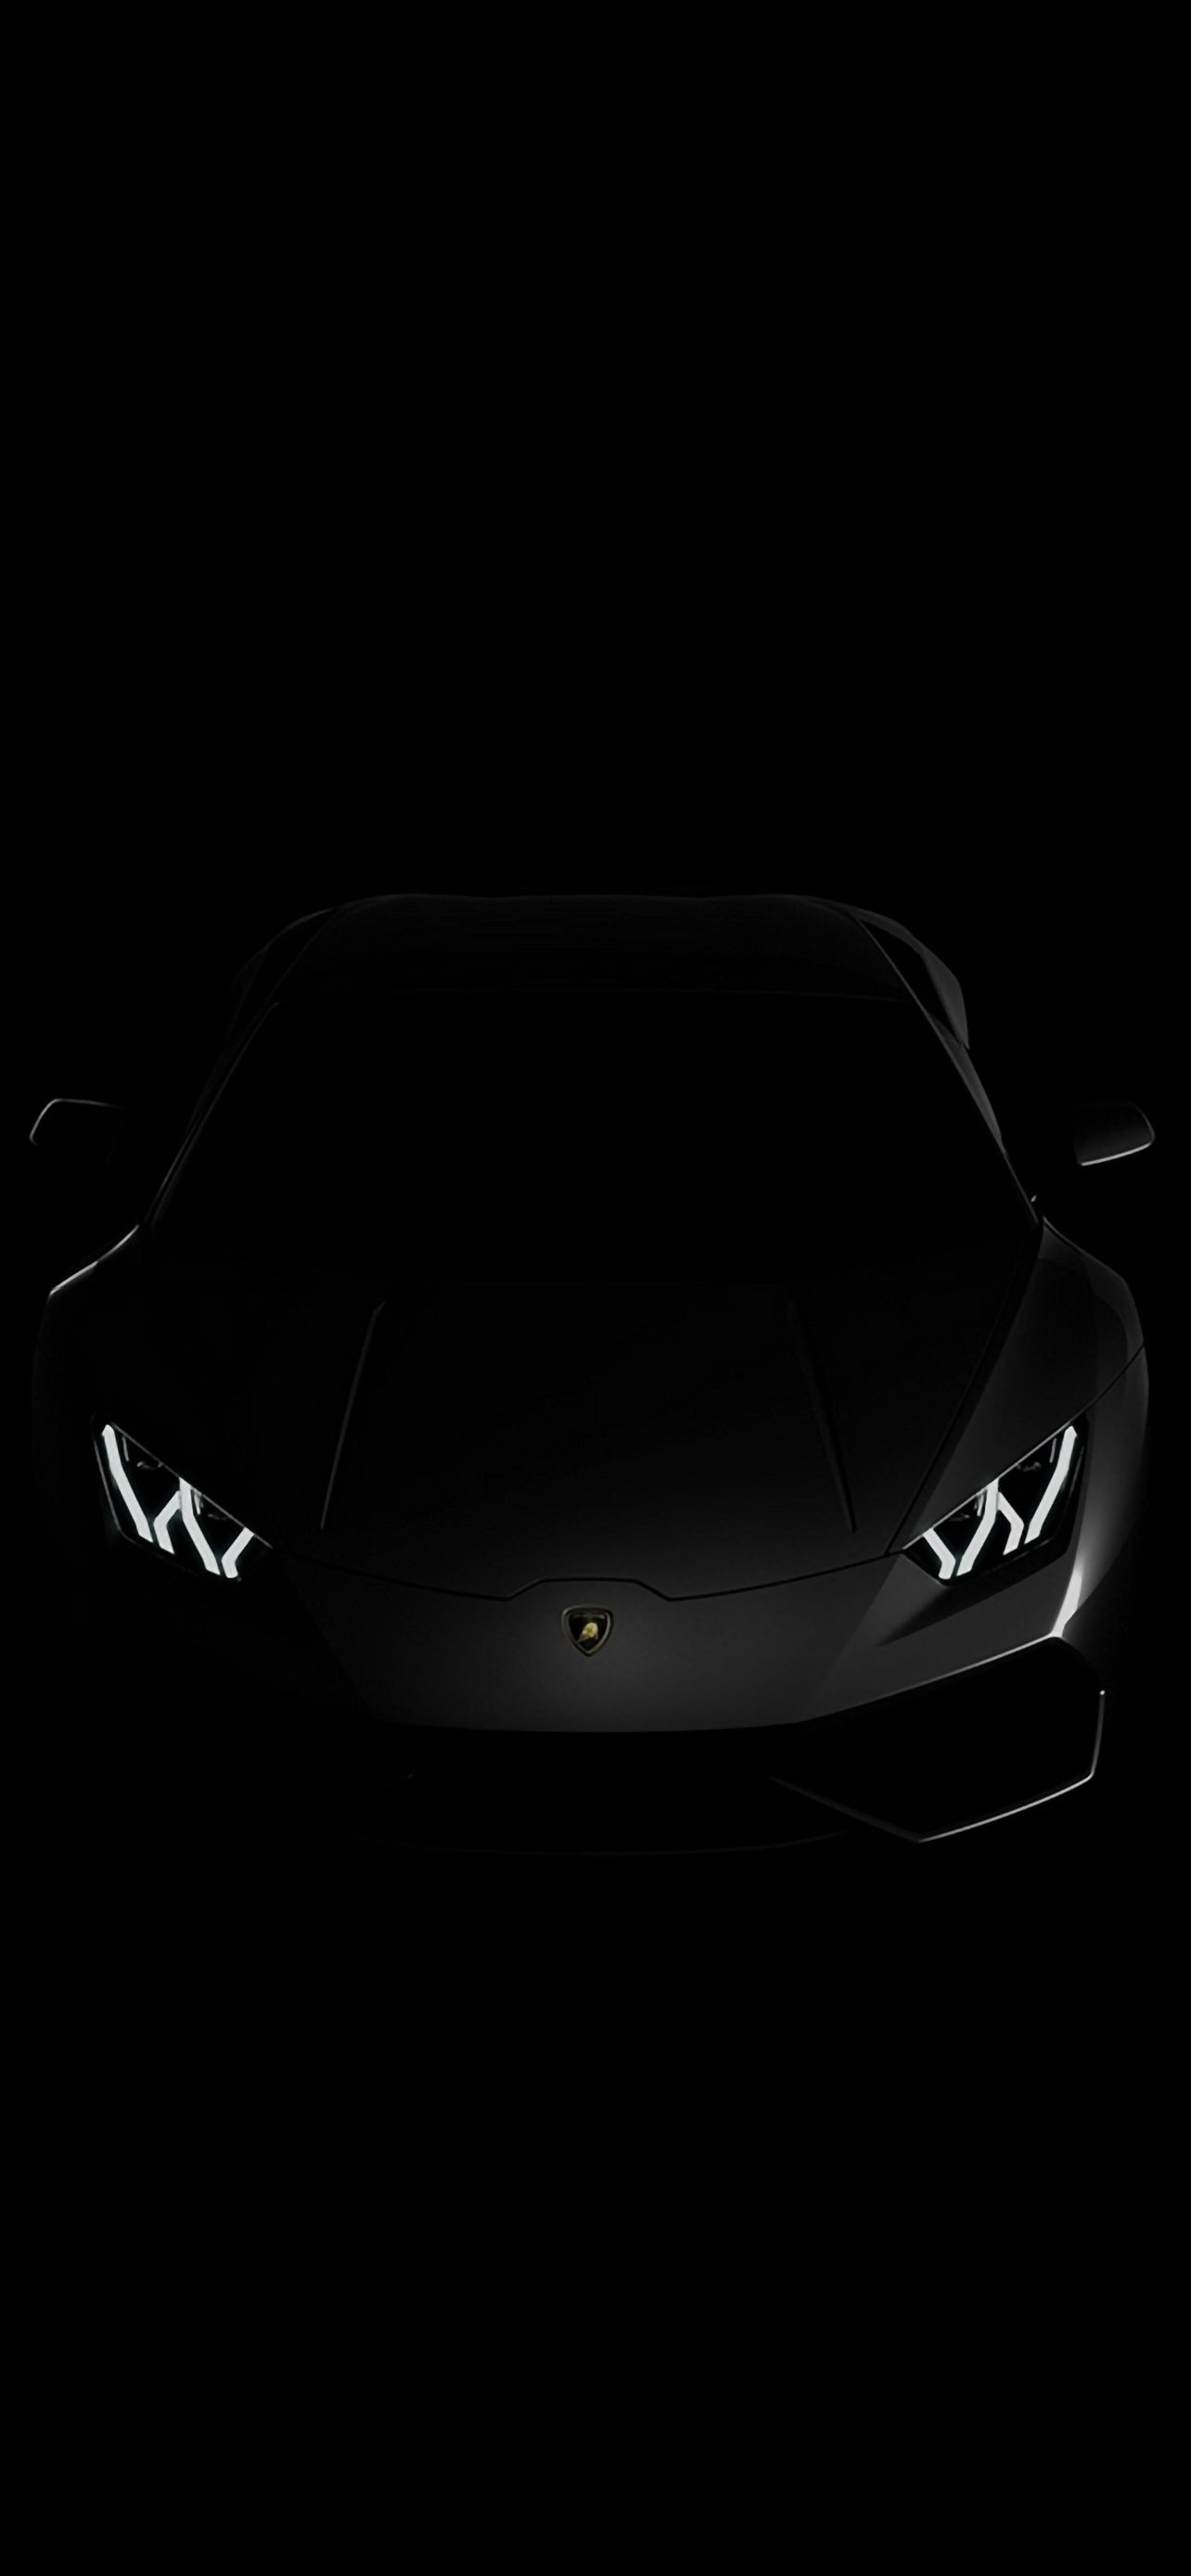 Lamborghini Huracan Lp Black Dark iPhone Wallpaper Free Download